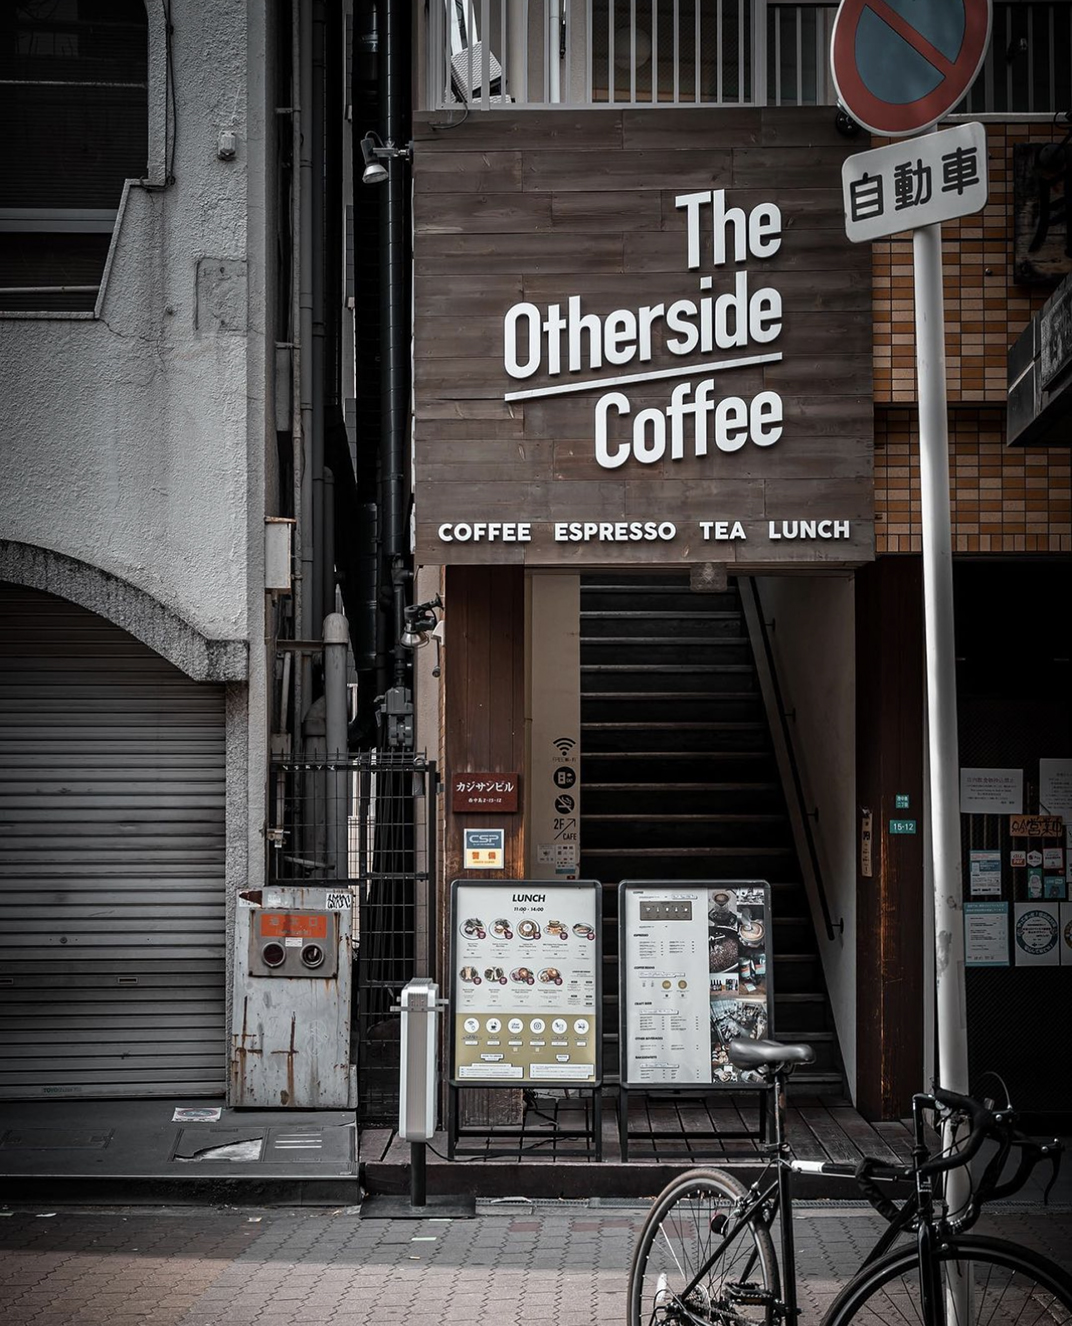 质朴复古咖啡店空间设计 日本 北京 上海 珠海 广州 武汉 杭州 佛山 澳门 logo设计 vi设计 空间设计